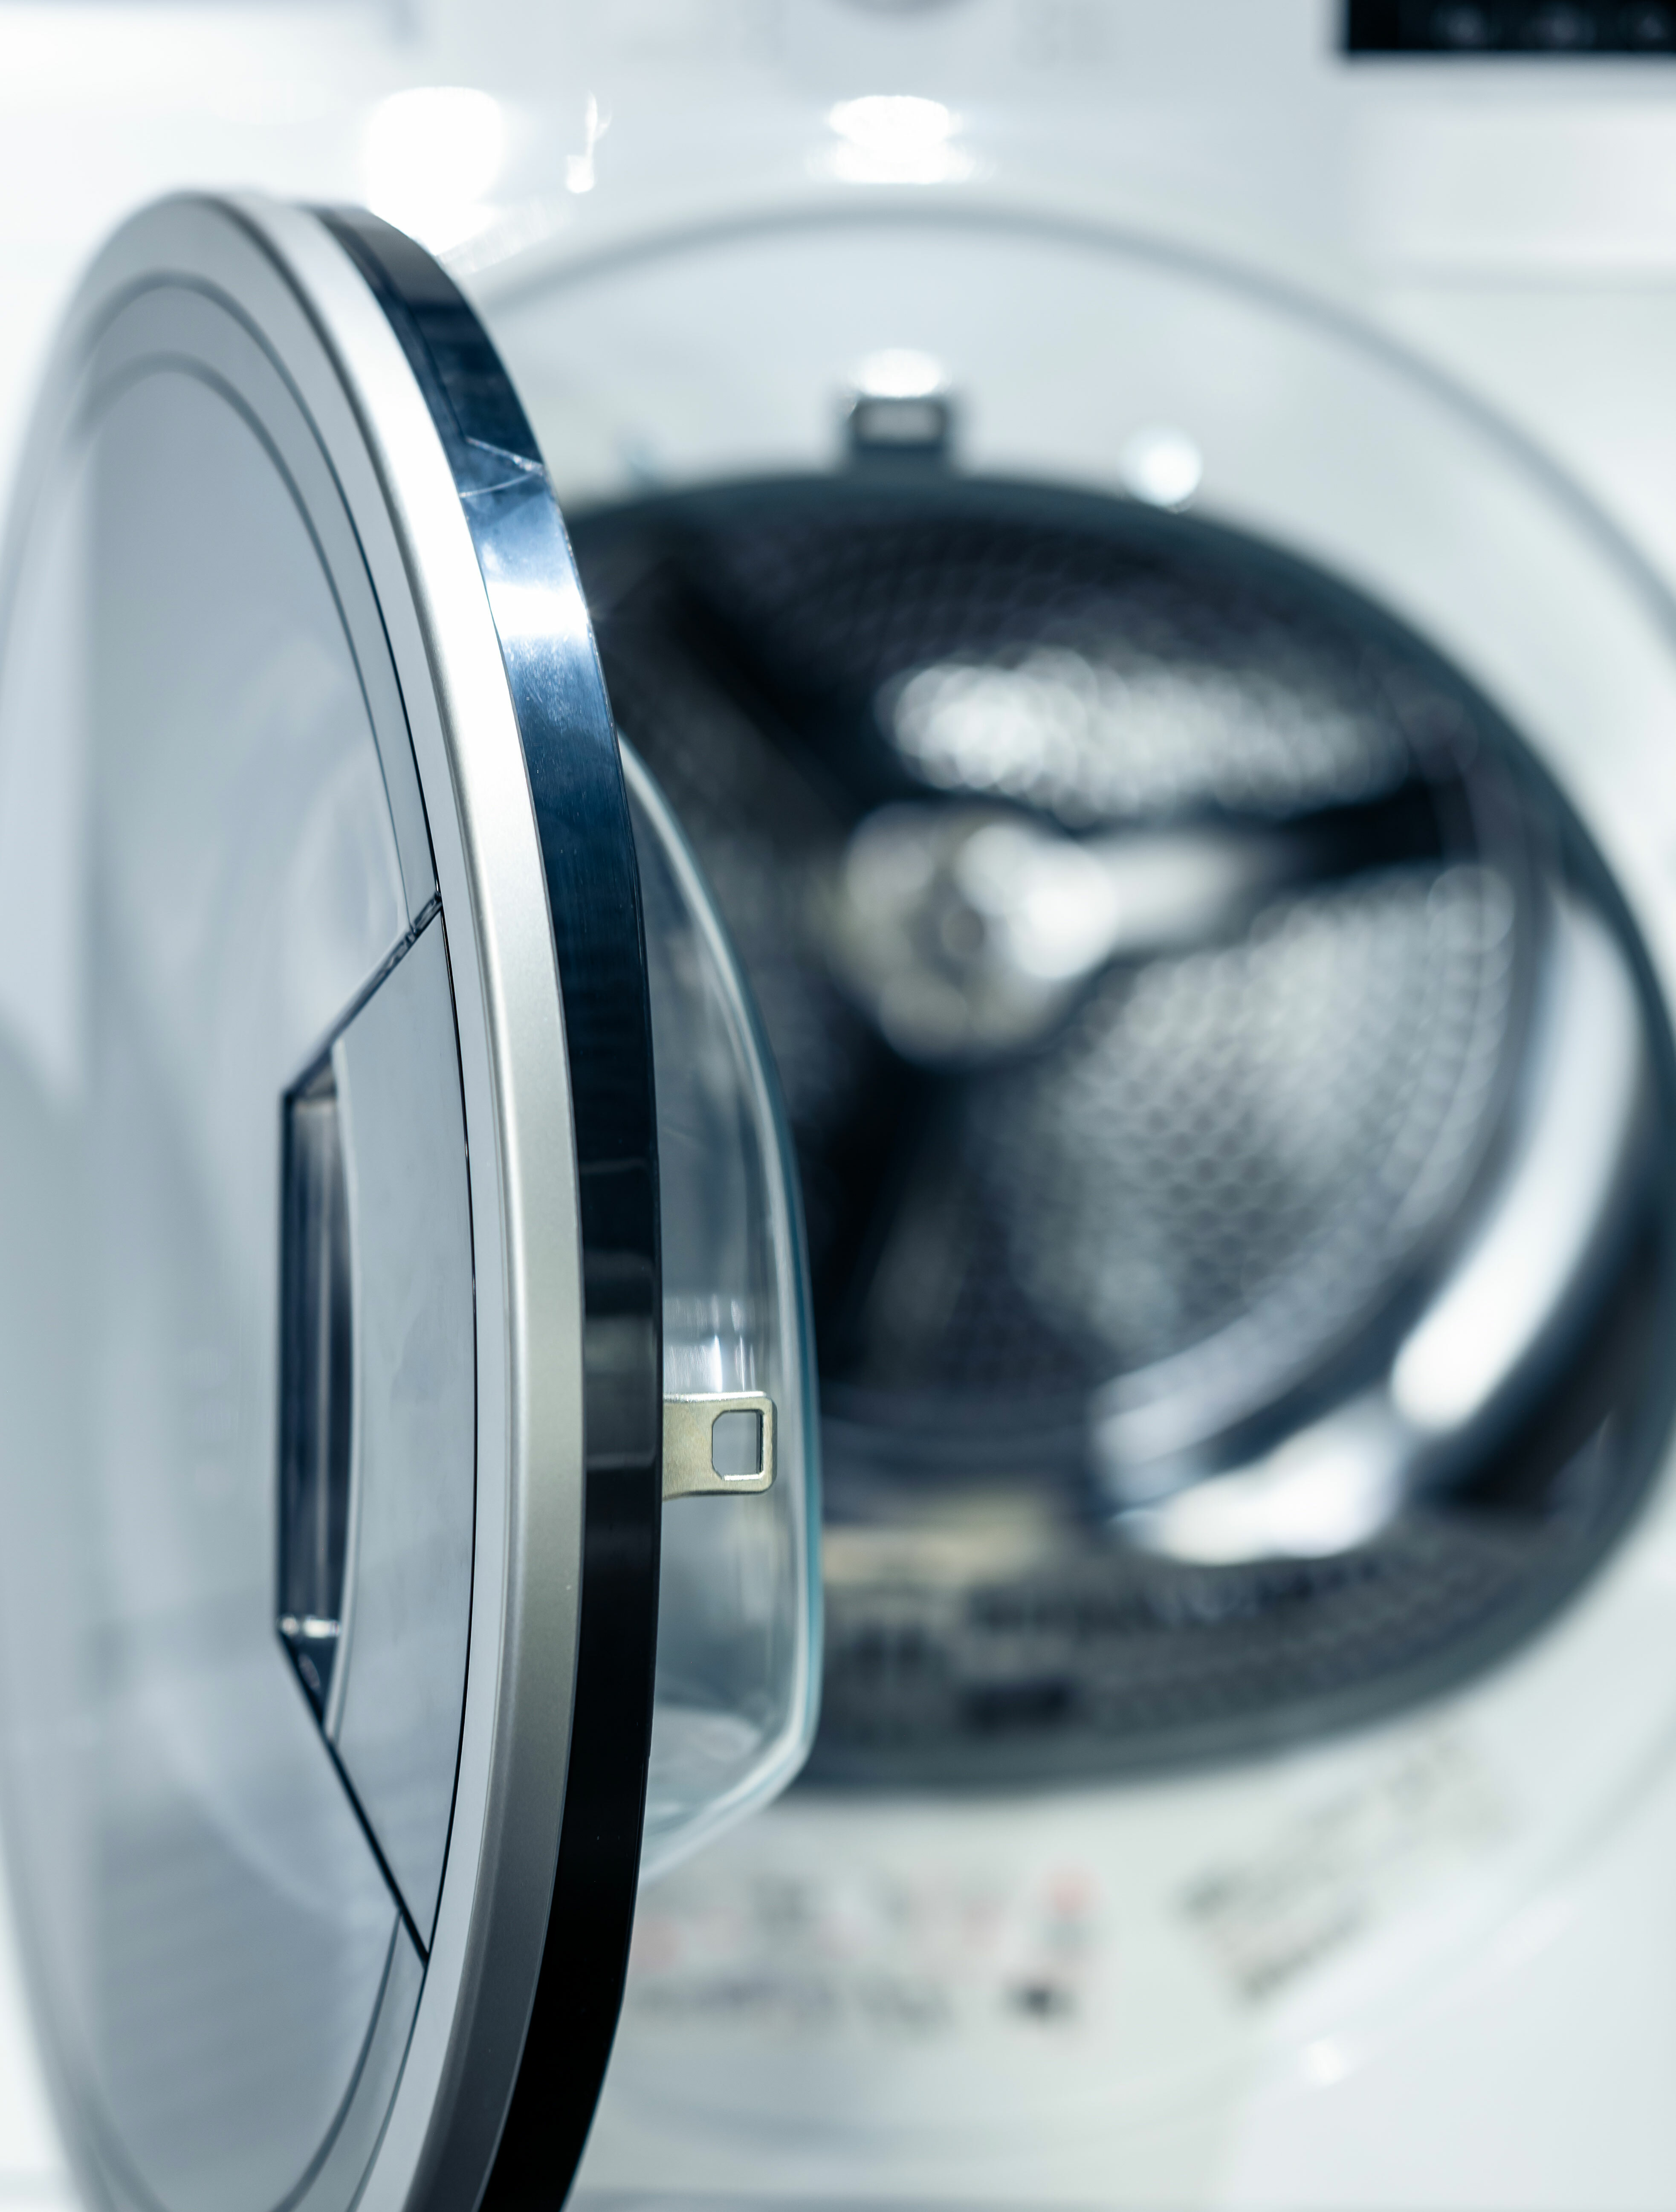 Désinfecter son linge dans un lave-linge : détergents à utiliser et cycles  de lavage